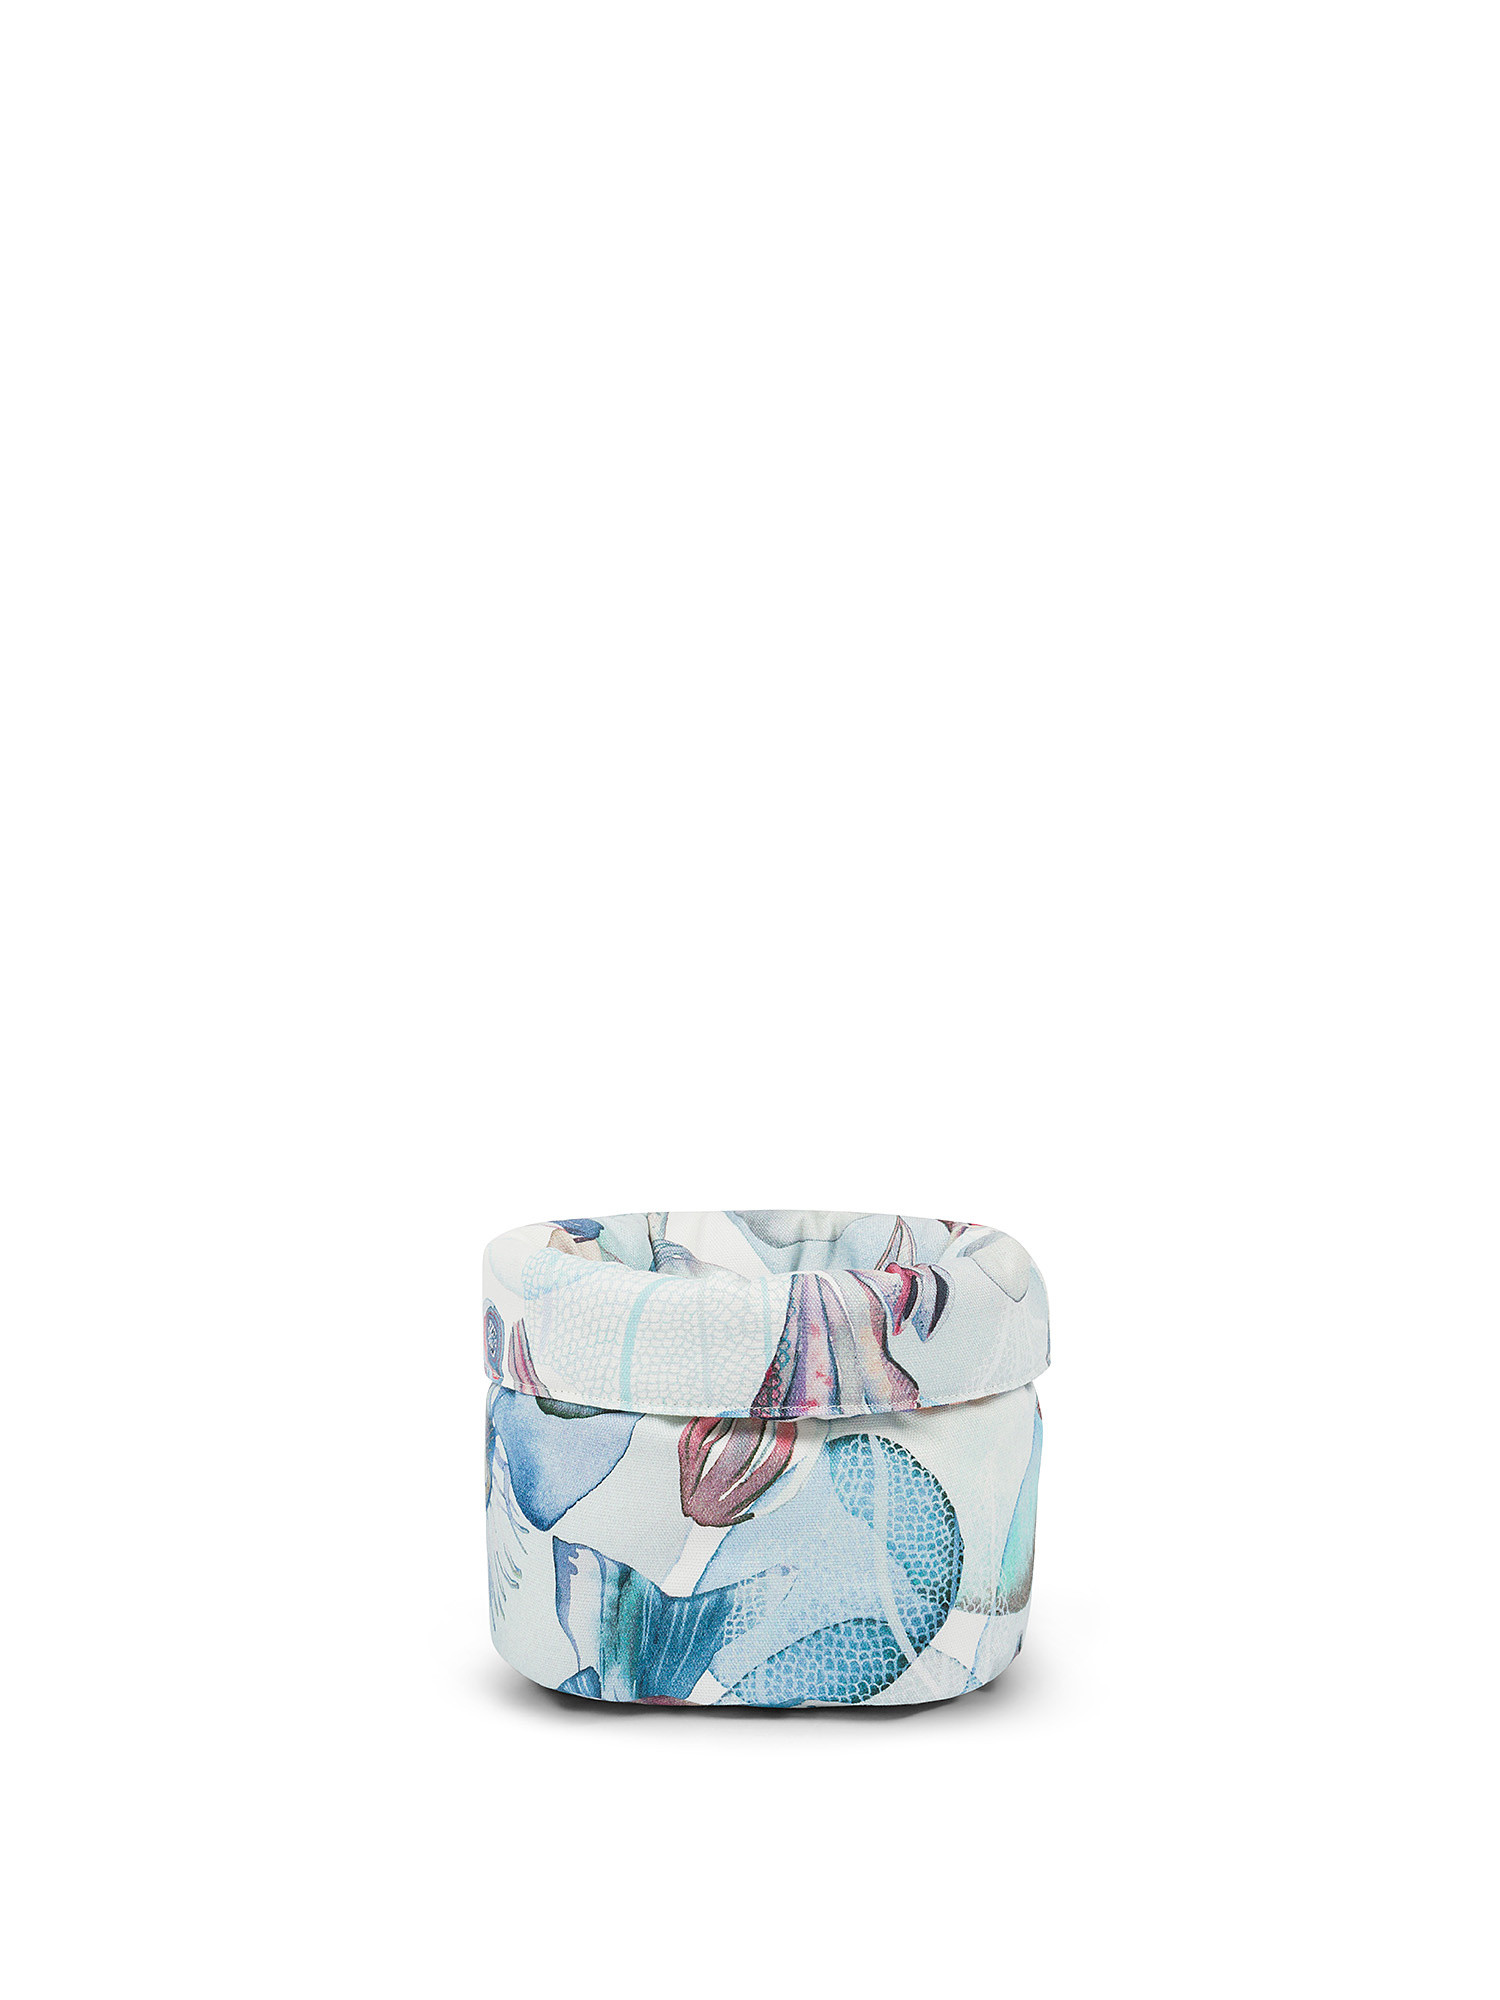 Cestino stampa fondale marino in panama di puro cotone., Multicolor, large image number 0